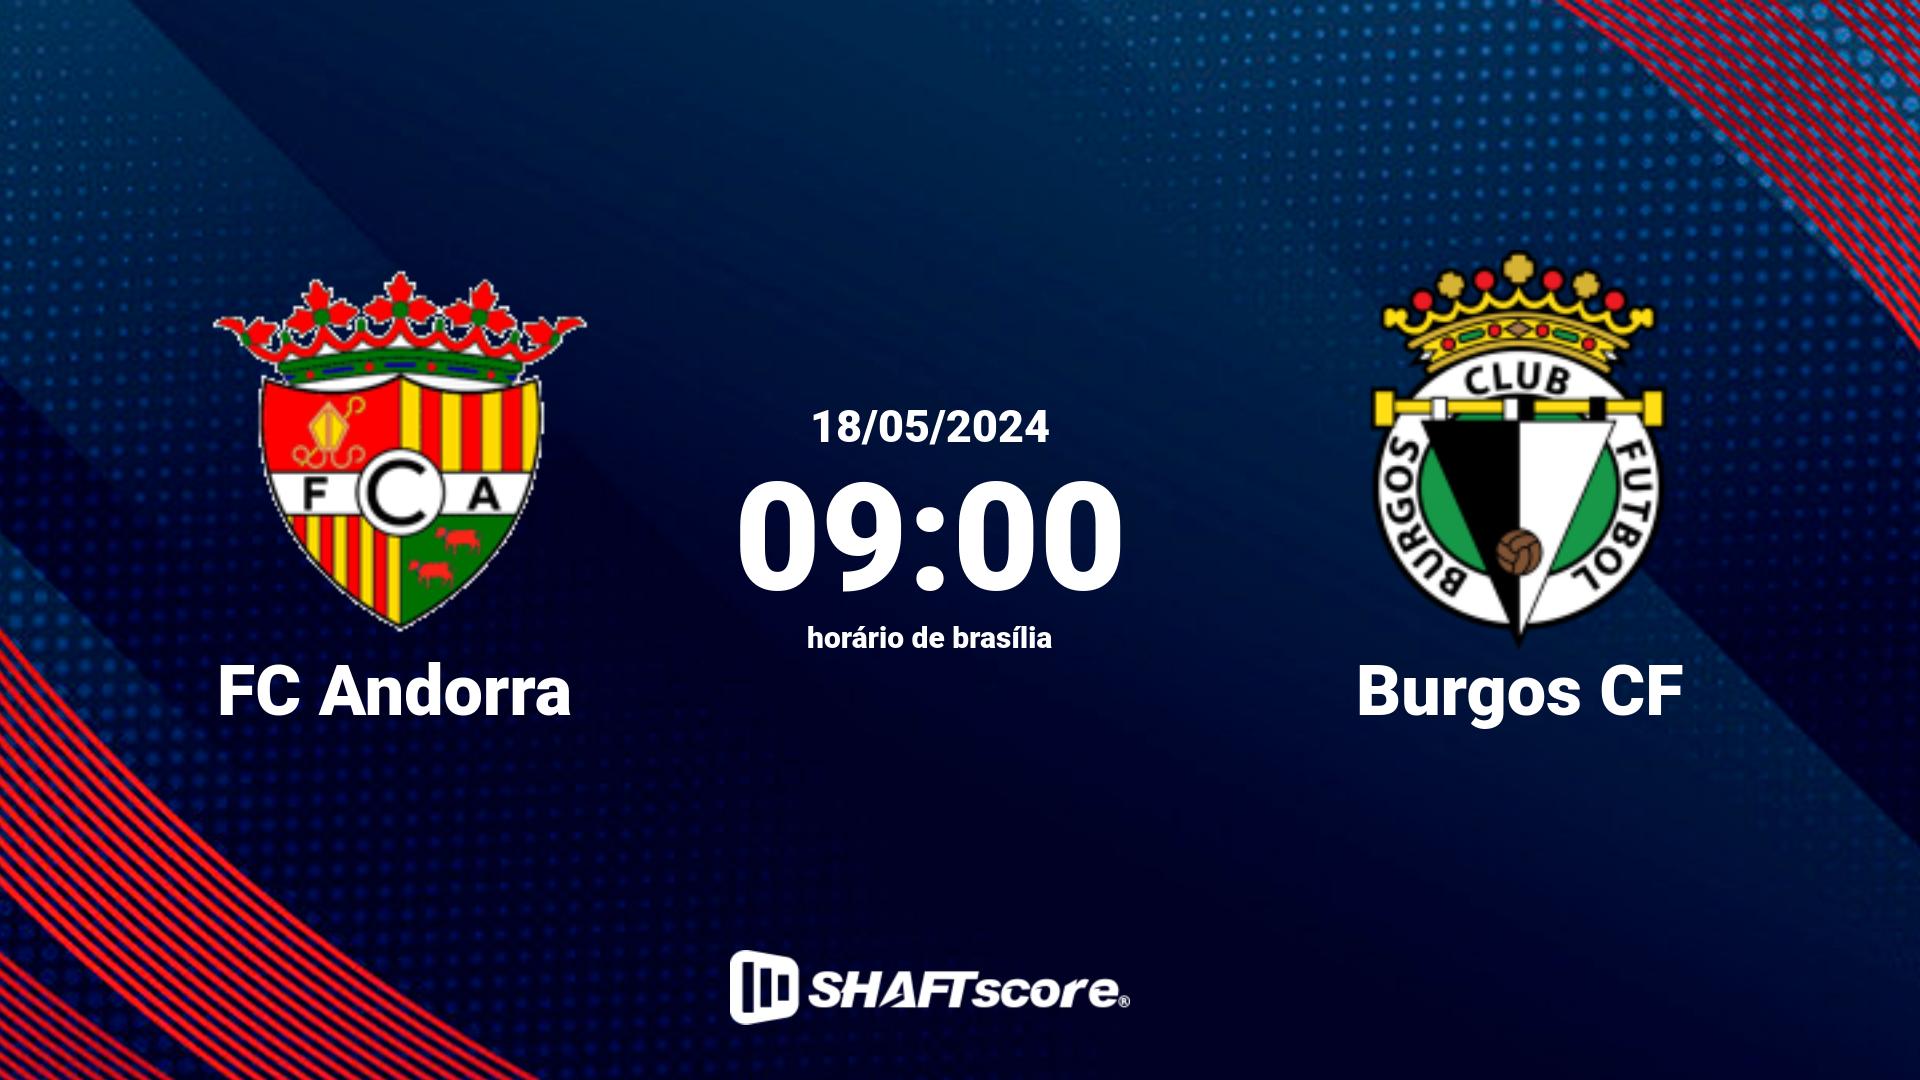 Estatísticas do jogo FC Andorra vs Burgos CF 18.05 09:00